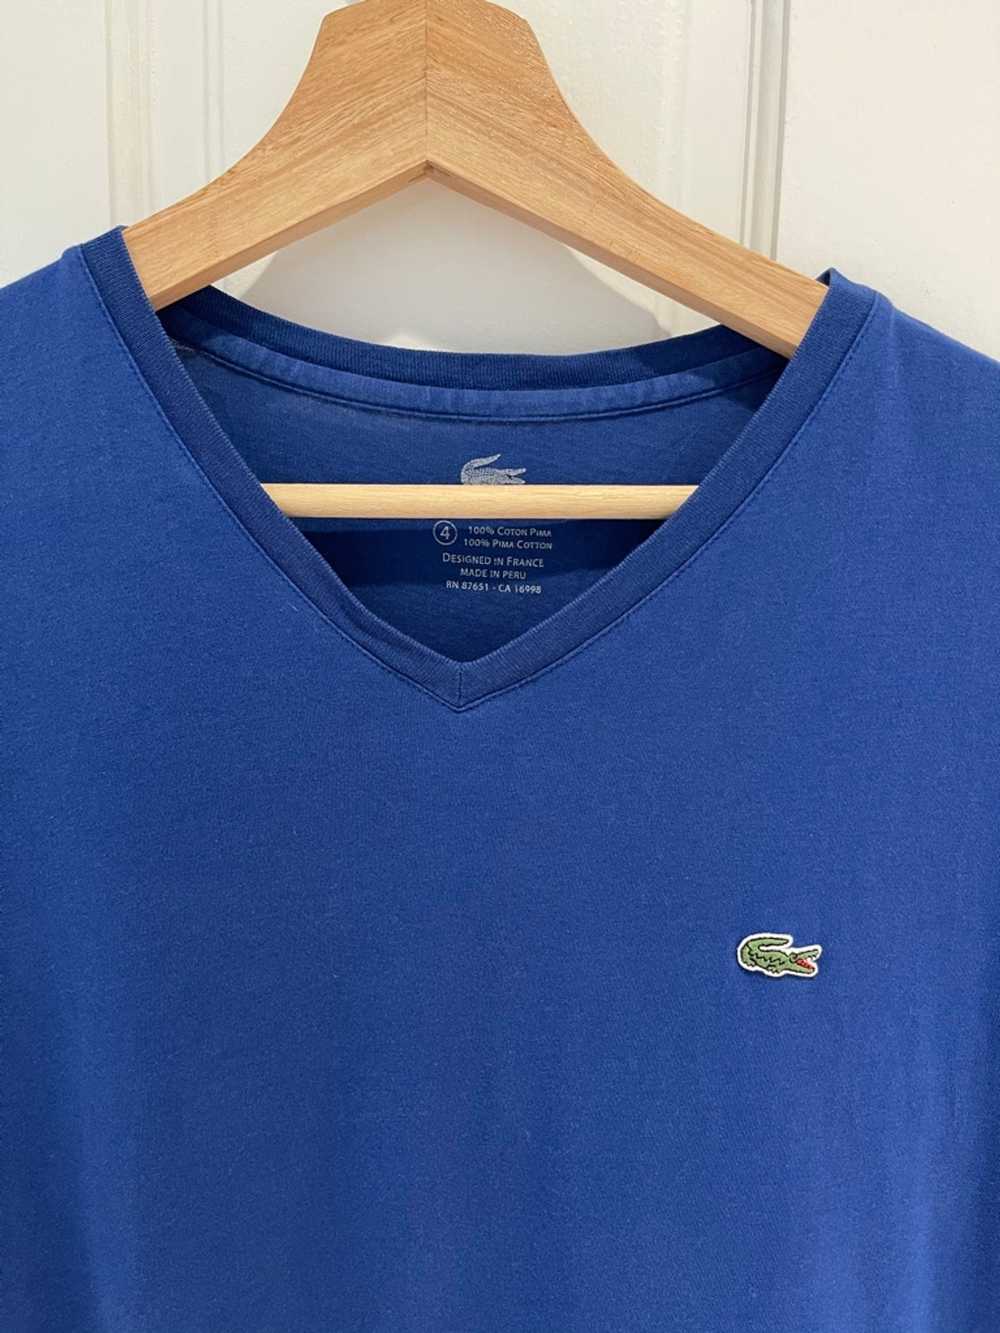 Lacoste Lacoste Pima Cotton Blue T Shirt - image 2